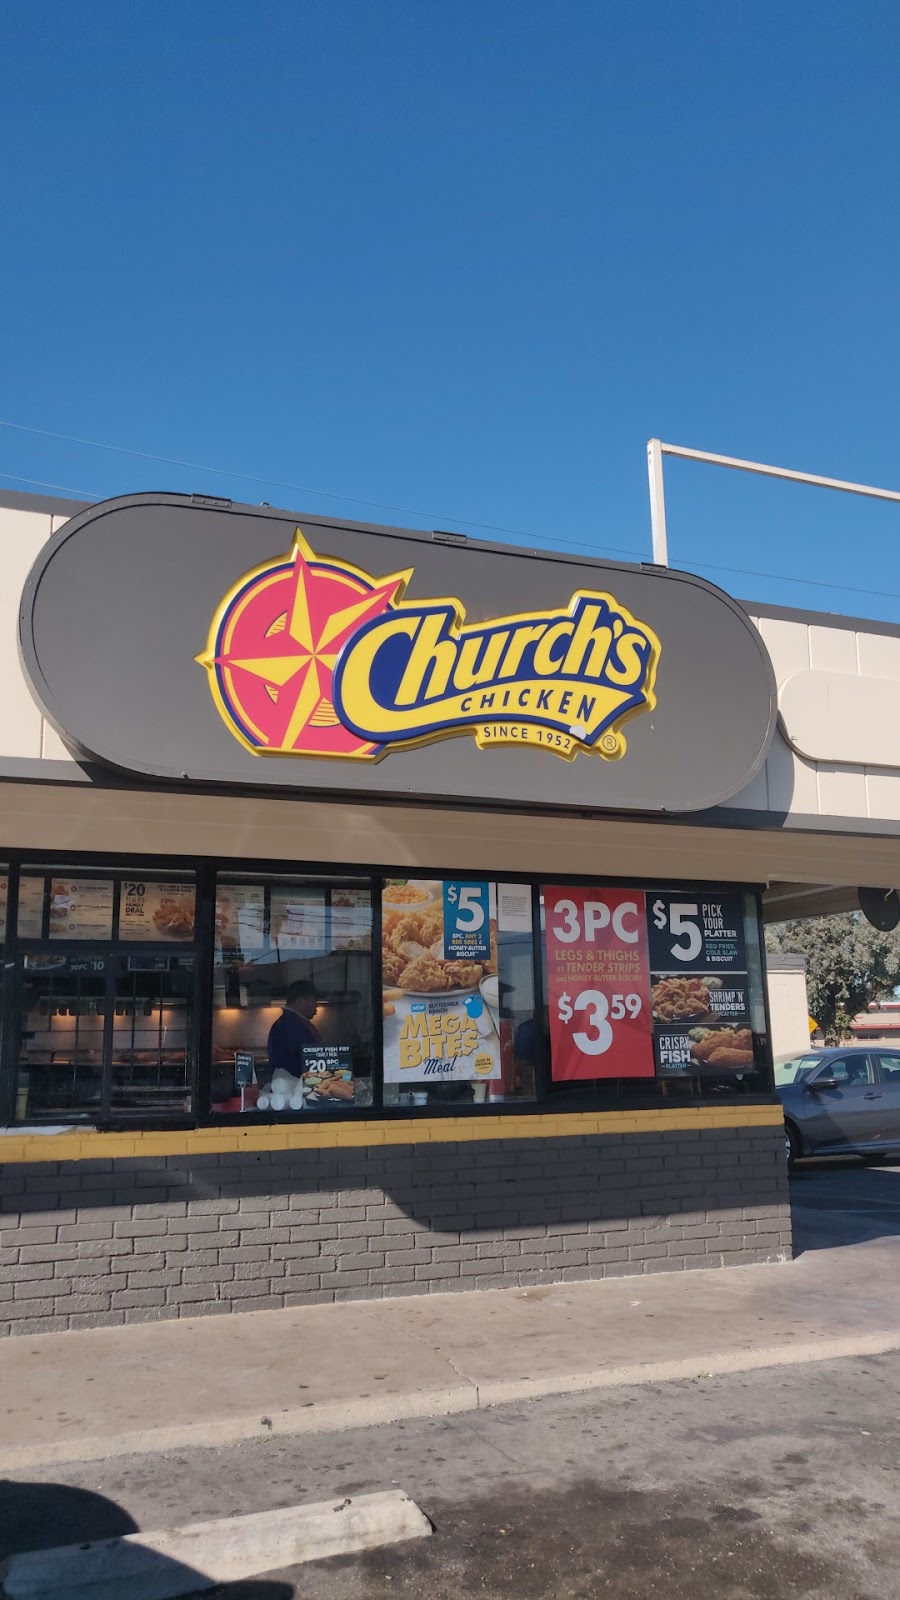 Churchs Texas Chicken | 217 N Central Ave, Compton, CA 90220 | Phone: (310) 637-6689